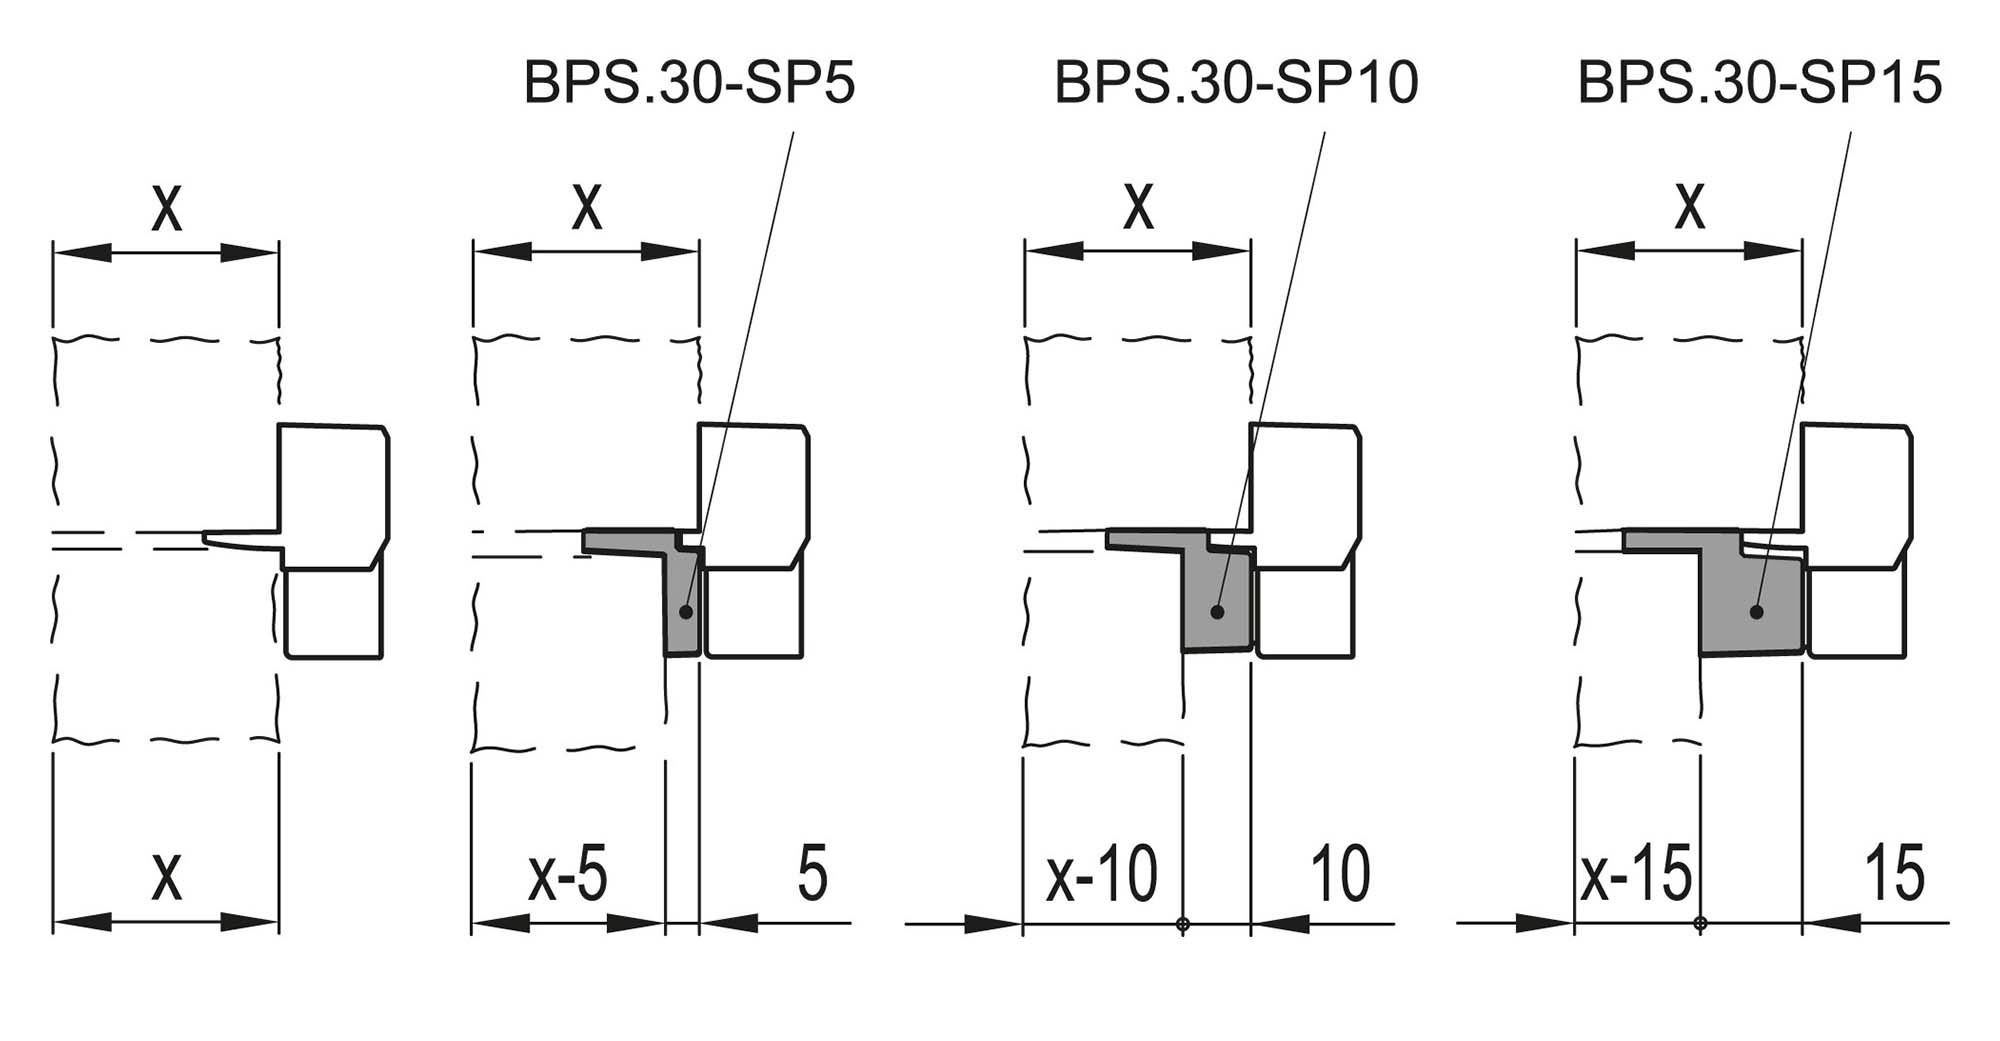 BPS.30-SP15